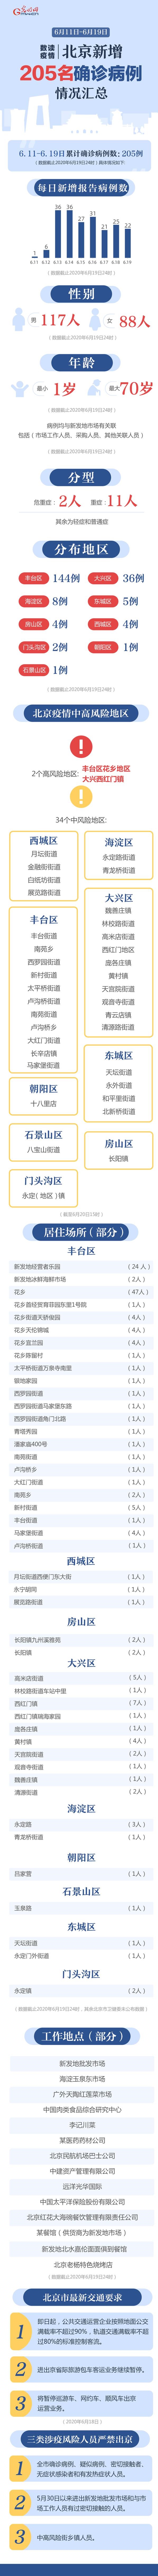 数读疫情 | 北京9天累计新增205例确诊病例 最小患者1岁